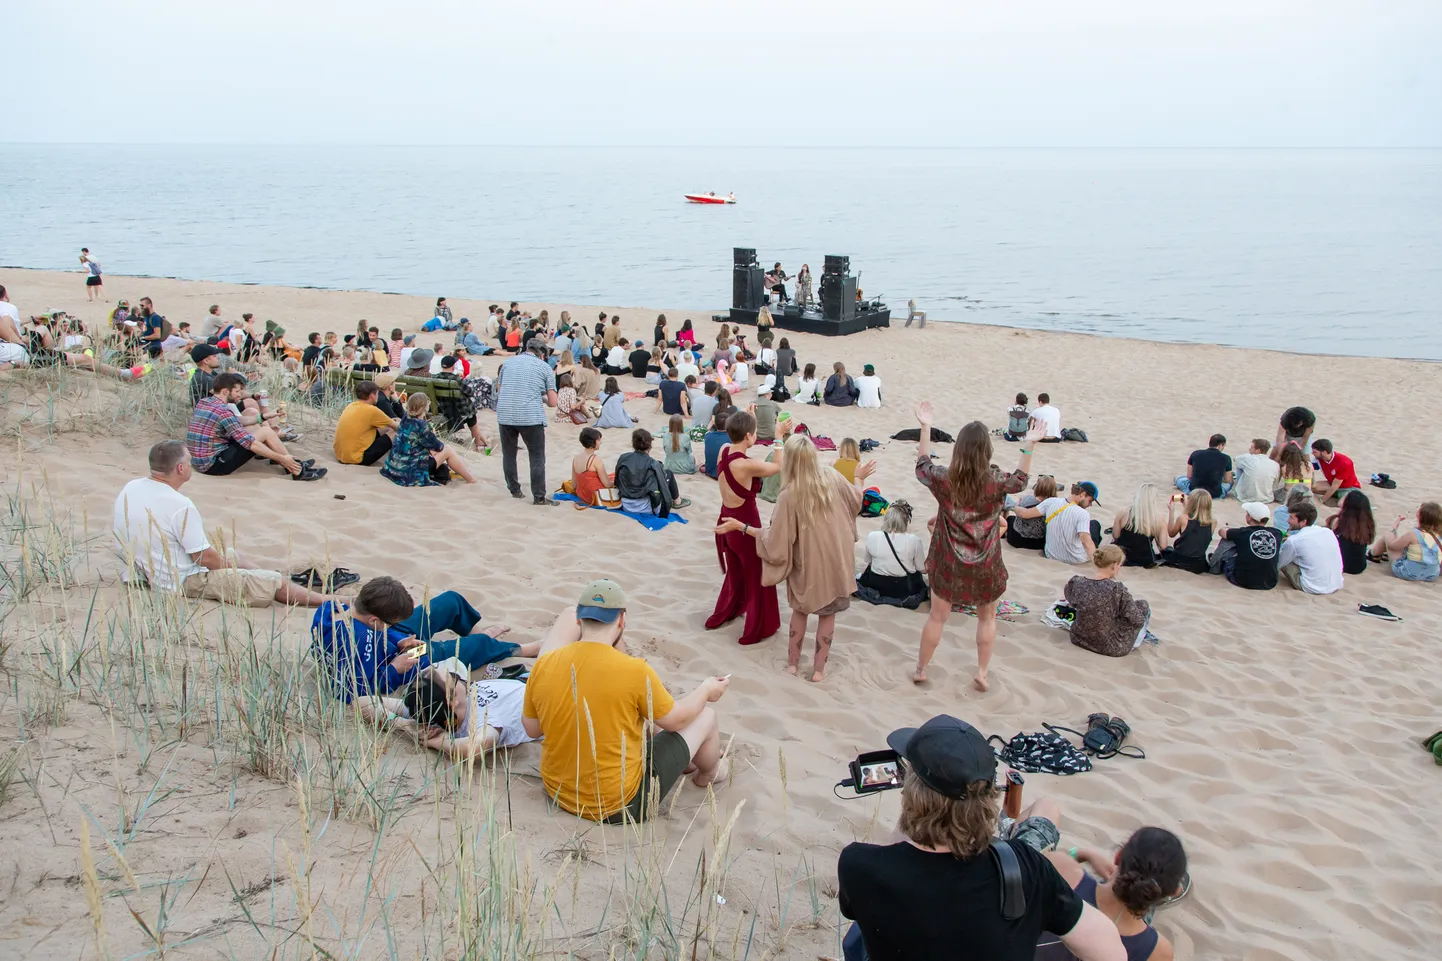 Фестиваль "Голос гор", который в прошлом году переехал из Кохтла-Нымме на пляж Каукси, освоился на новом месте. Одна из сцен и в этом году расположится прямо на границе воды и суши.